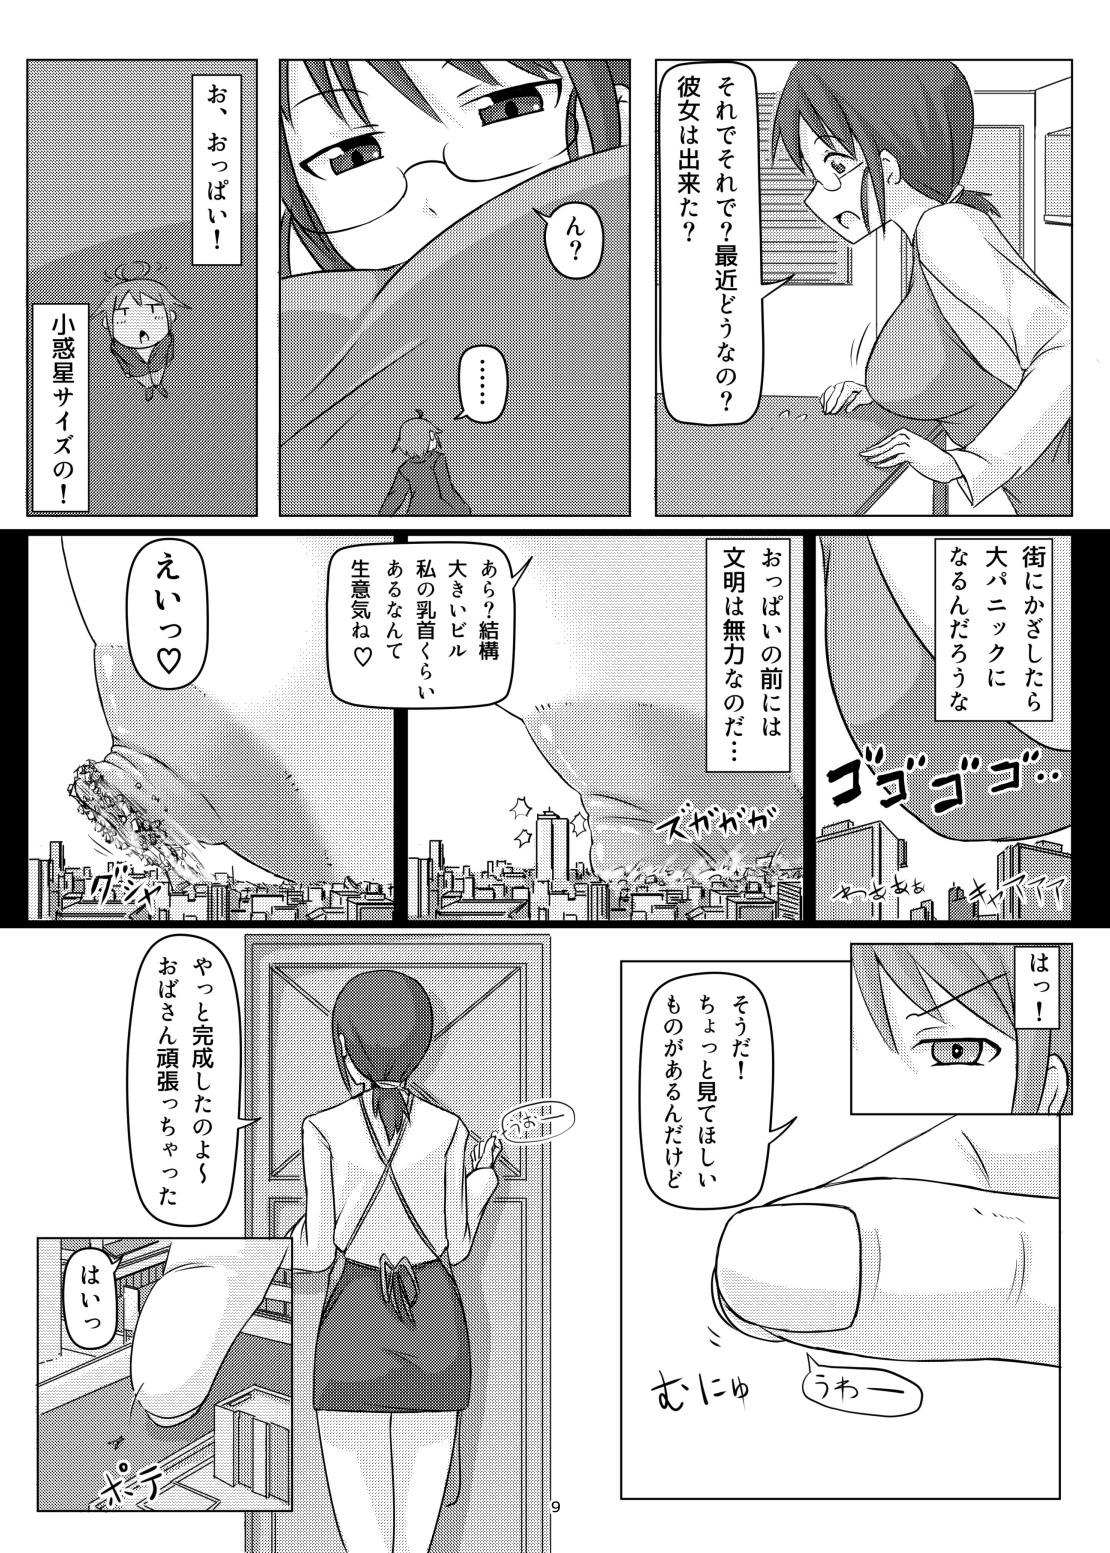 Semen オテコレ日本語版 Orgia - Page 8